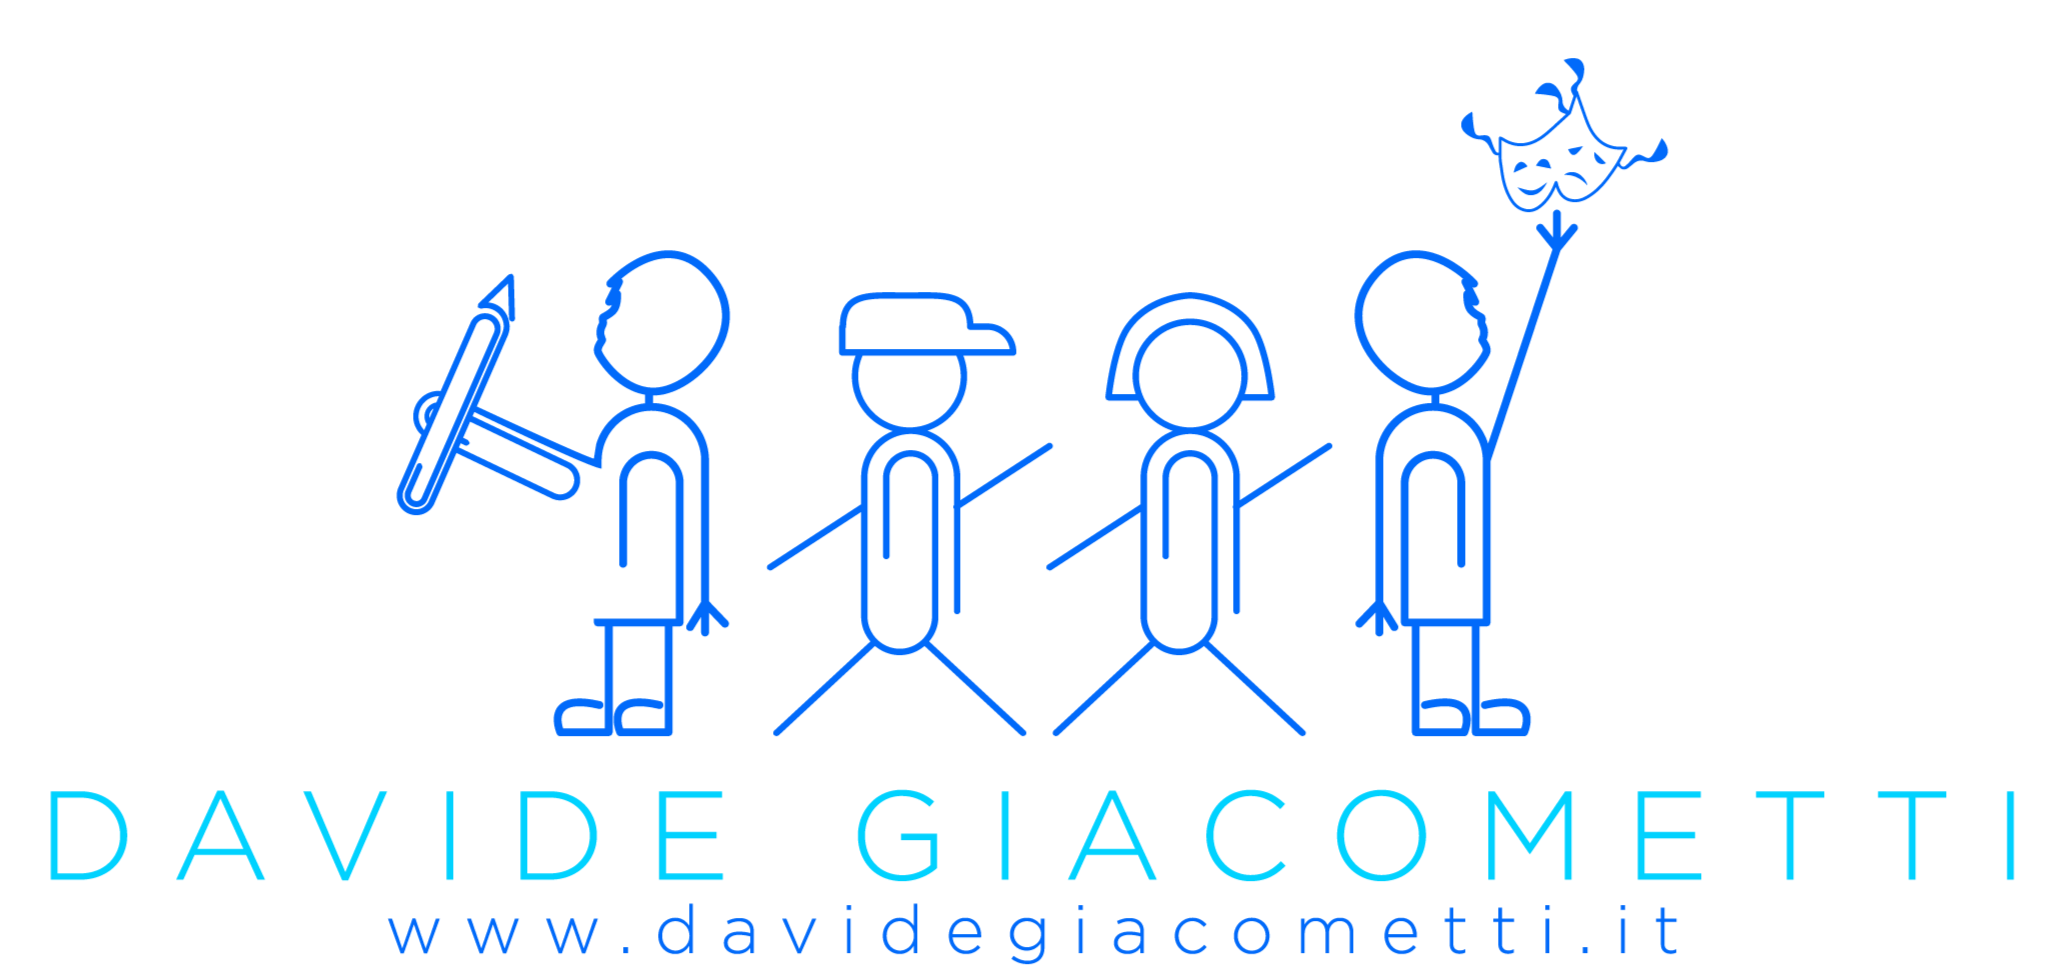 Davide Giacometti